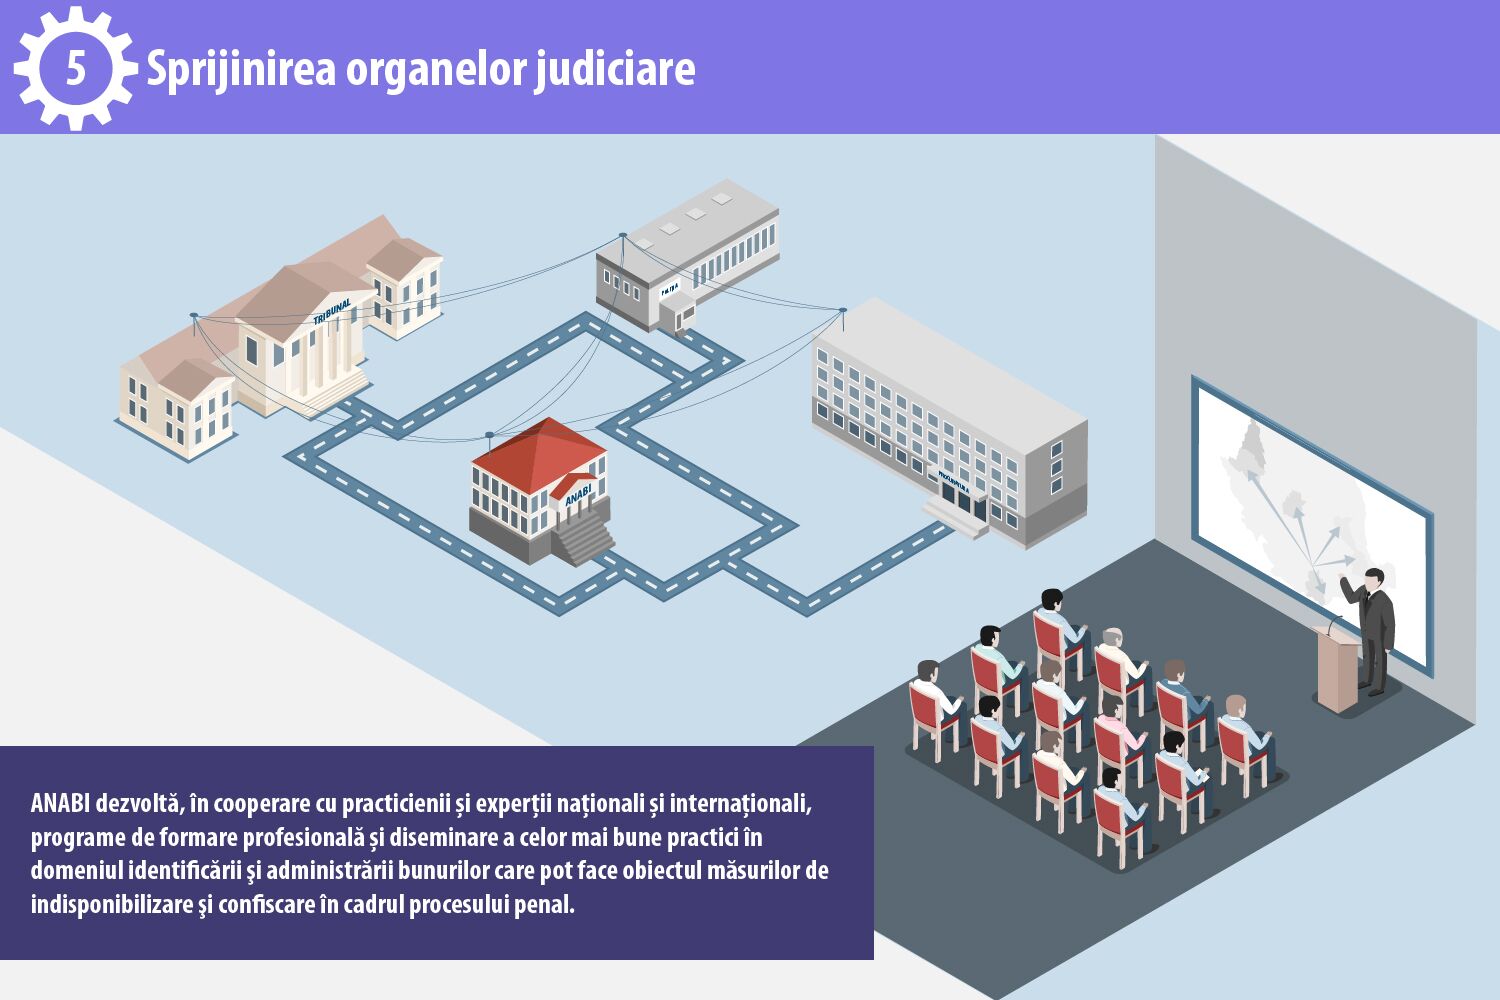 5. Sprijinirea organelor judiciare